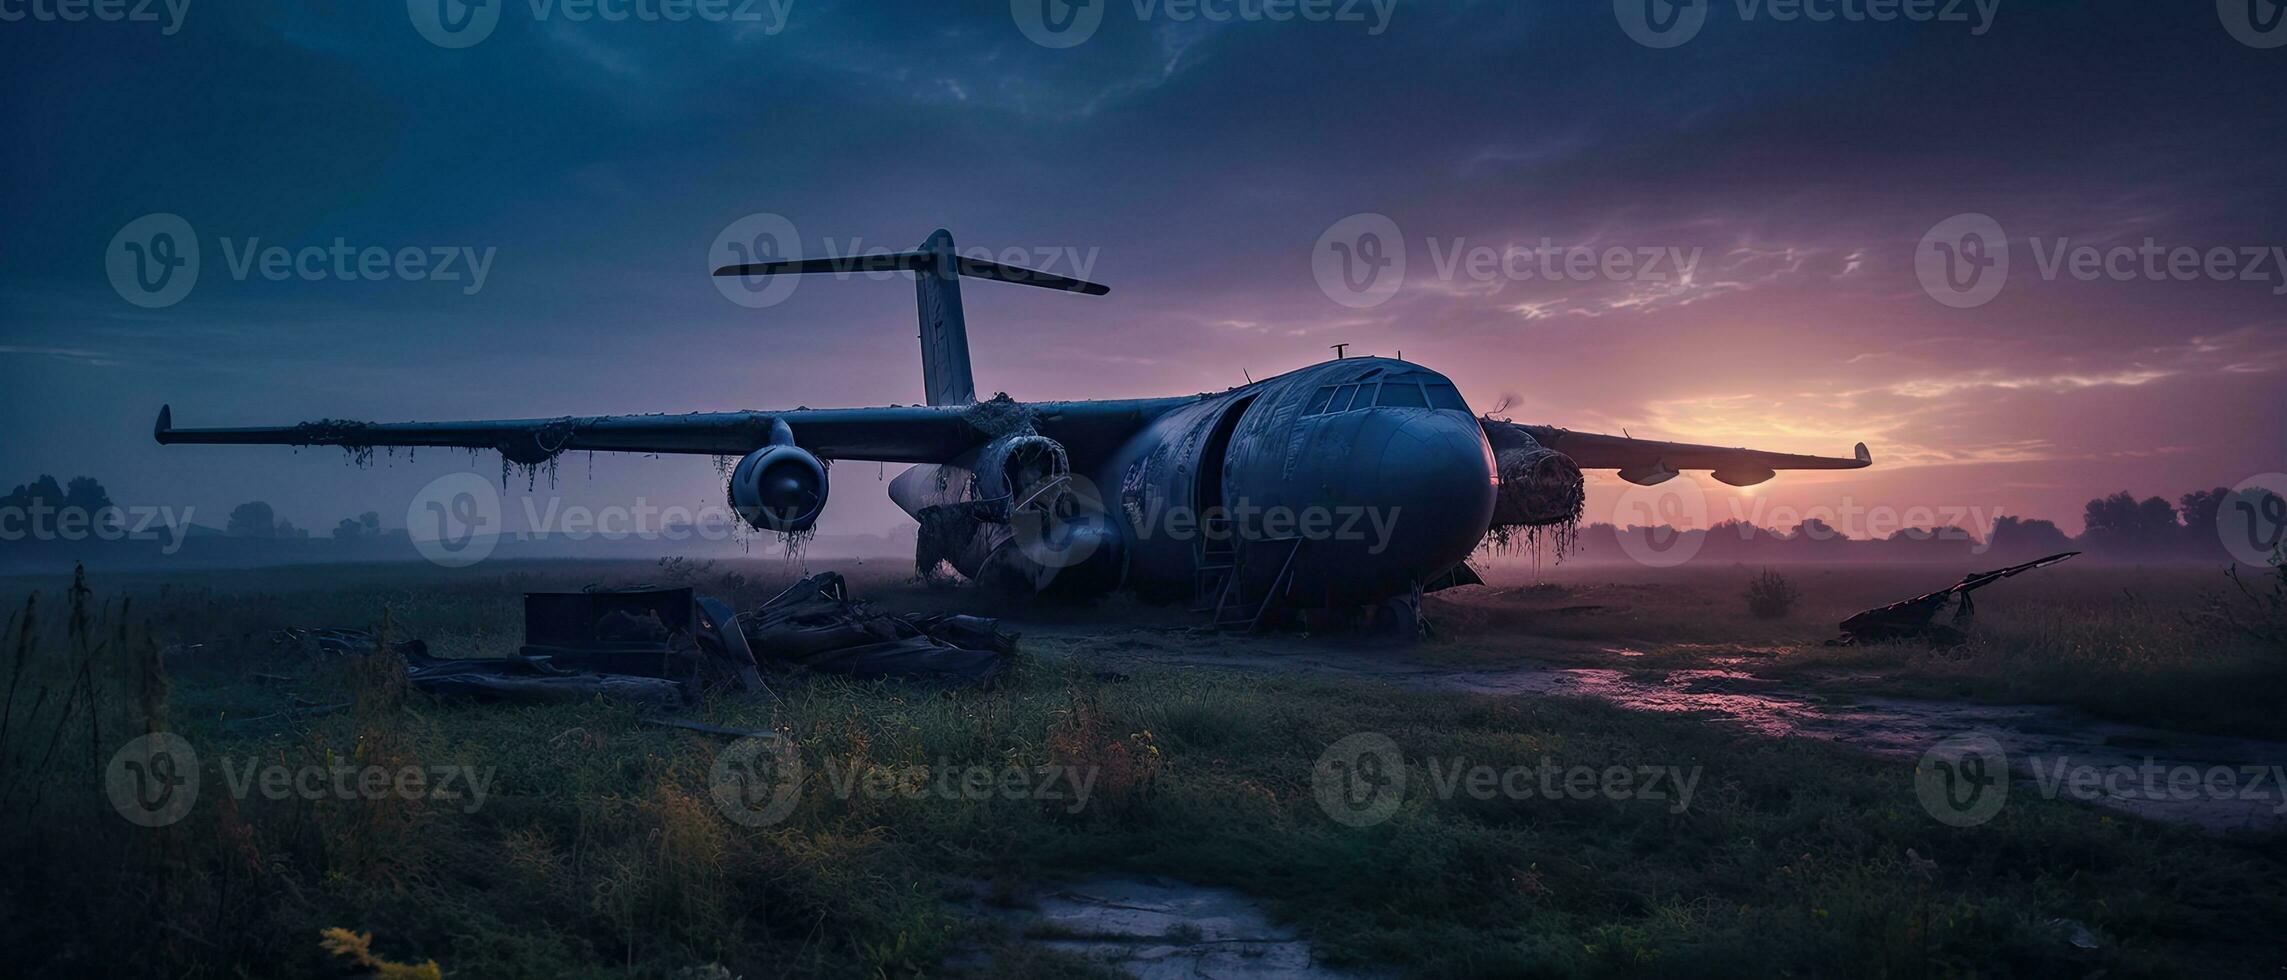 grande guerra avión militar enviar apocalipsis paisaje guerra juego fondo de pantalla foto Arte ilustración oxido